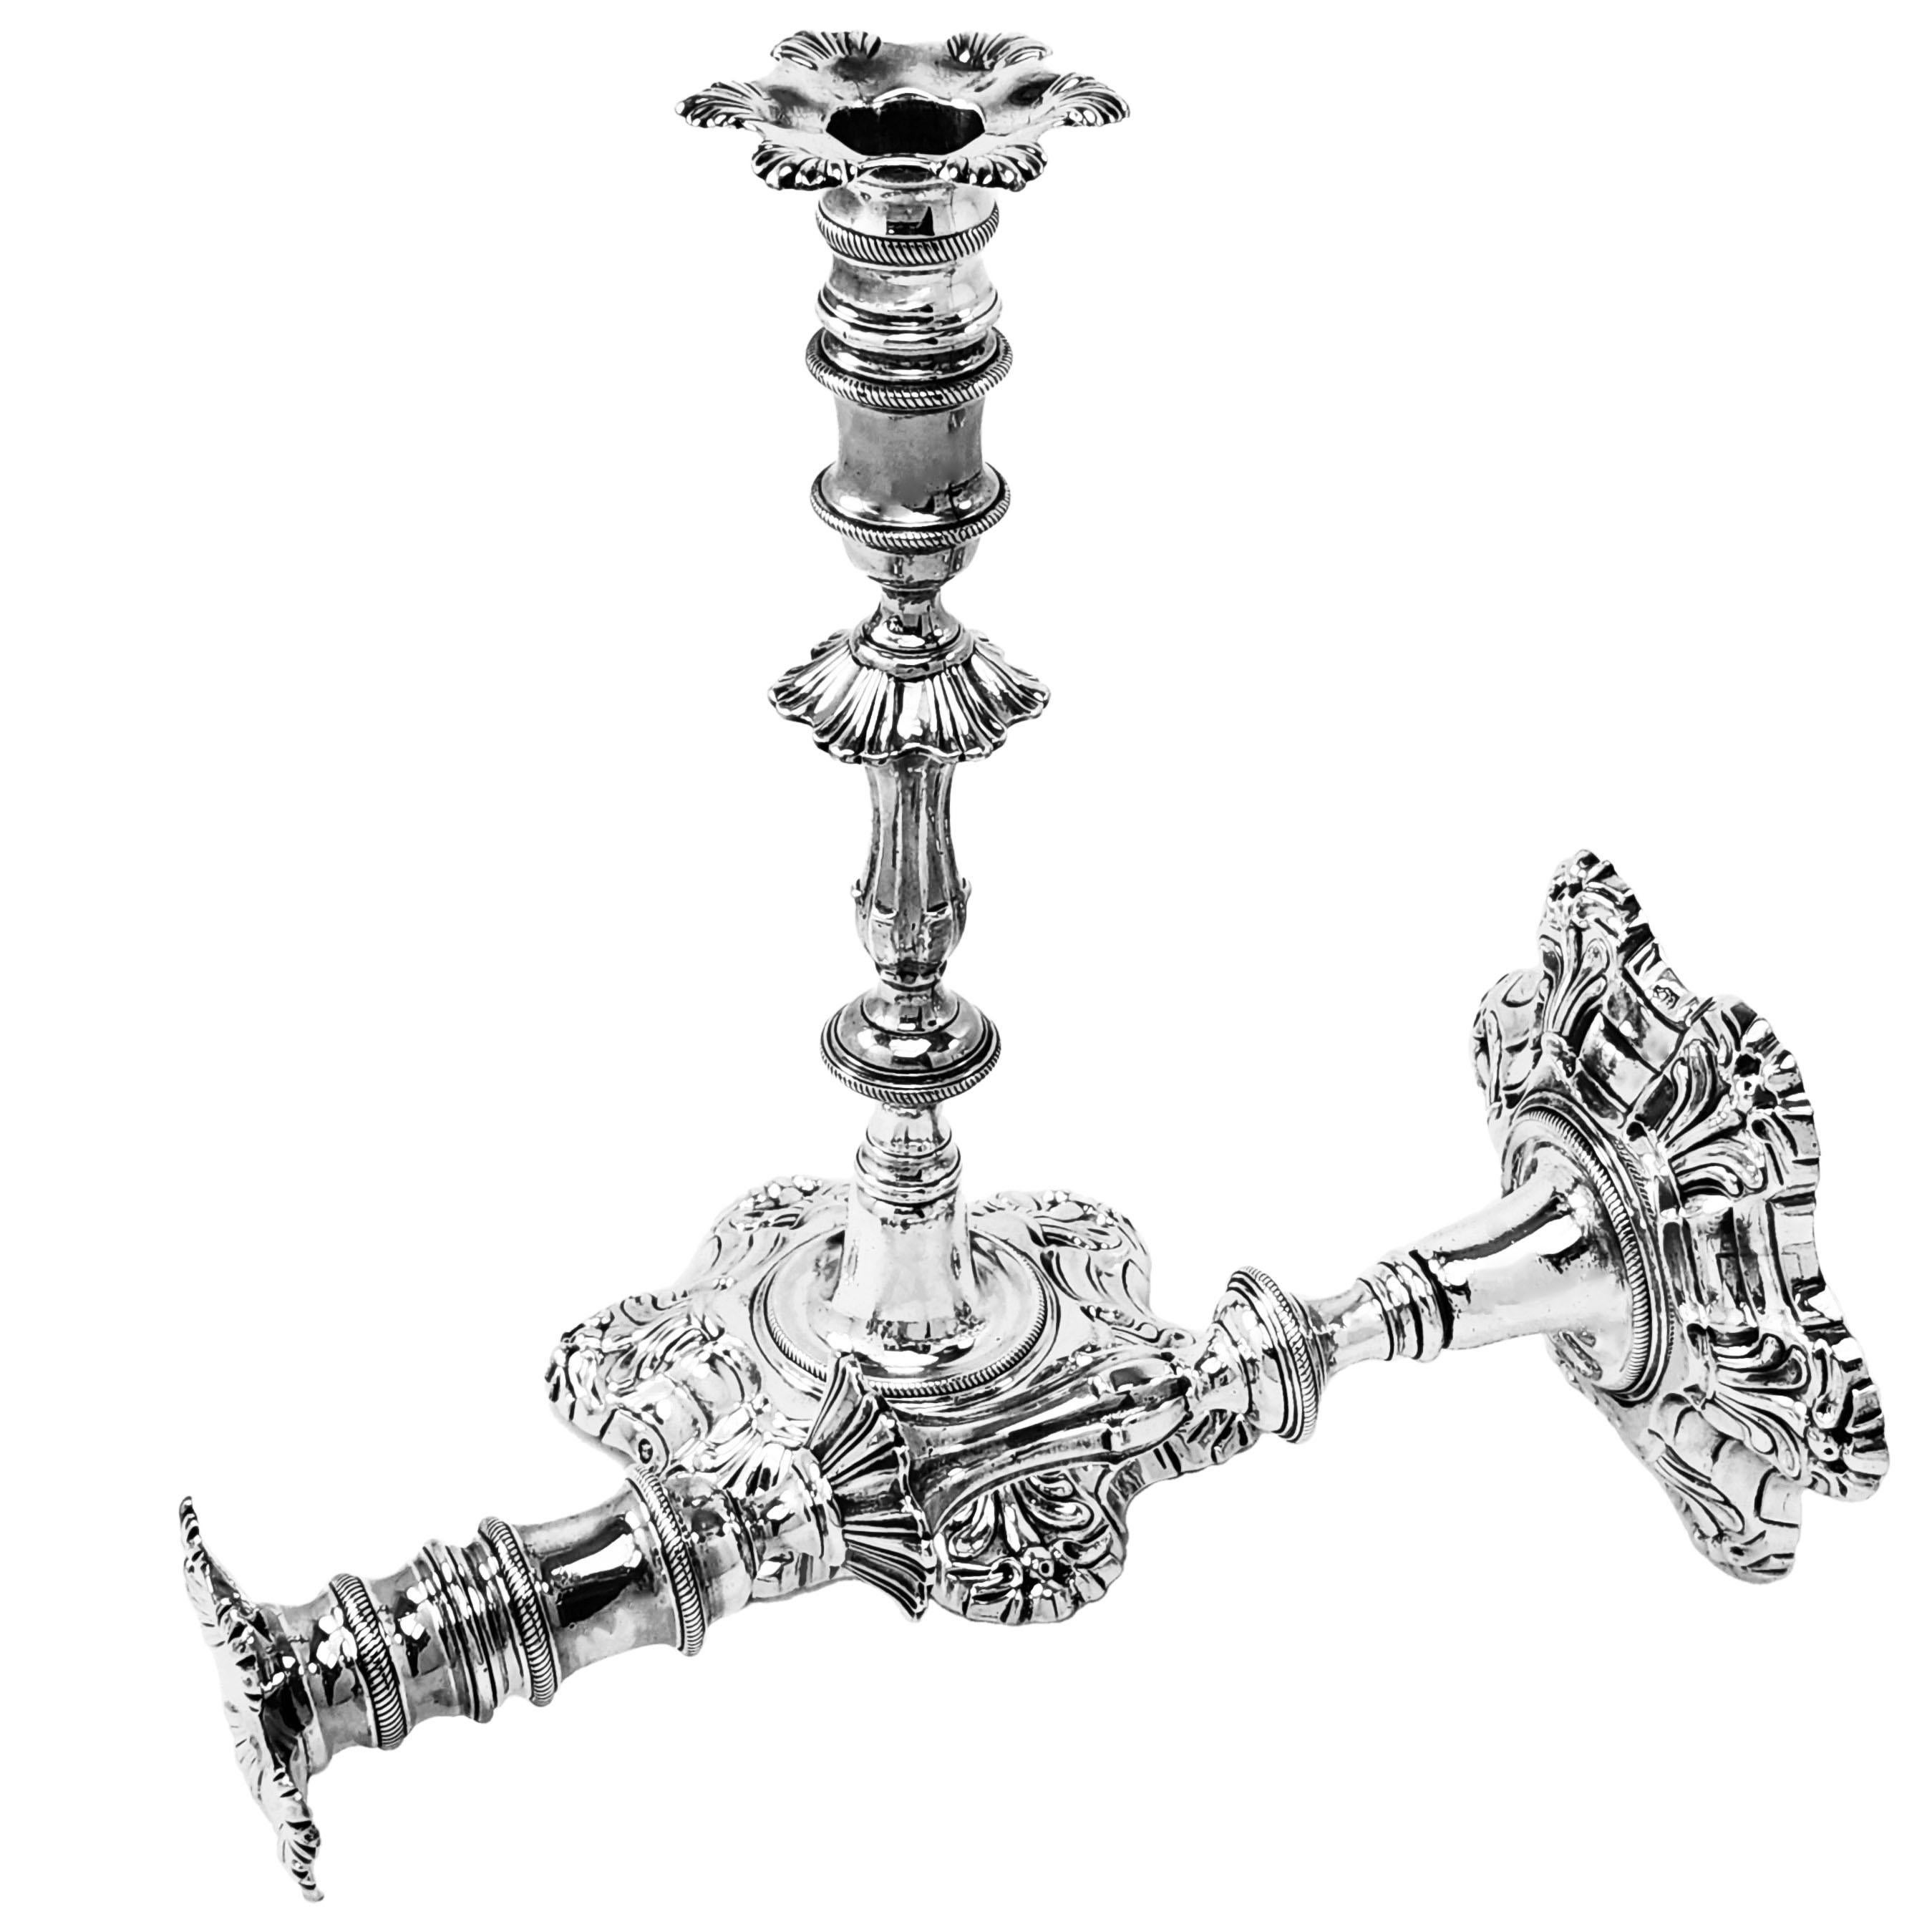 Ein Paar antiker georgianischer Silberguss-Kerzenleuchter im klassischen sechsschaligen Design mit abnehmbaren Tüllen, die ein komplementäres sechsschaliges Design aufweisen. Die irischen Silberleuchter aus dem 18. Jahrhundert haben verschnörkelte